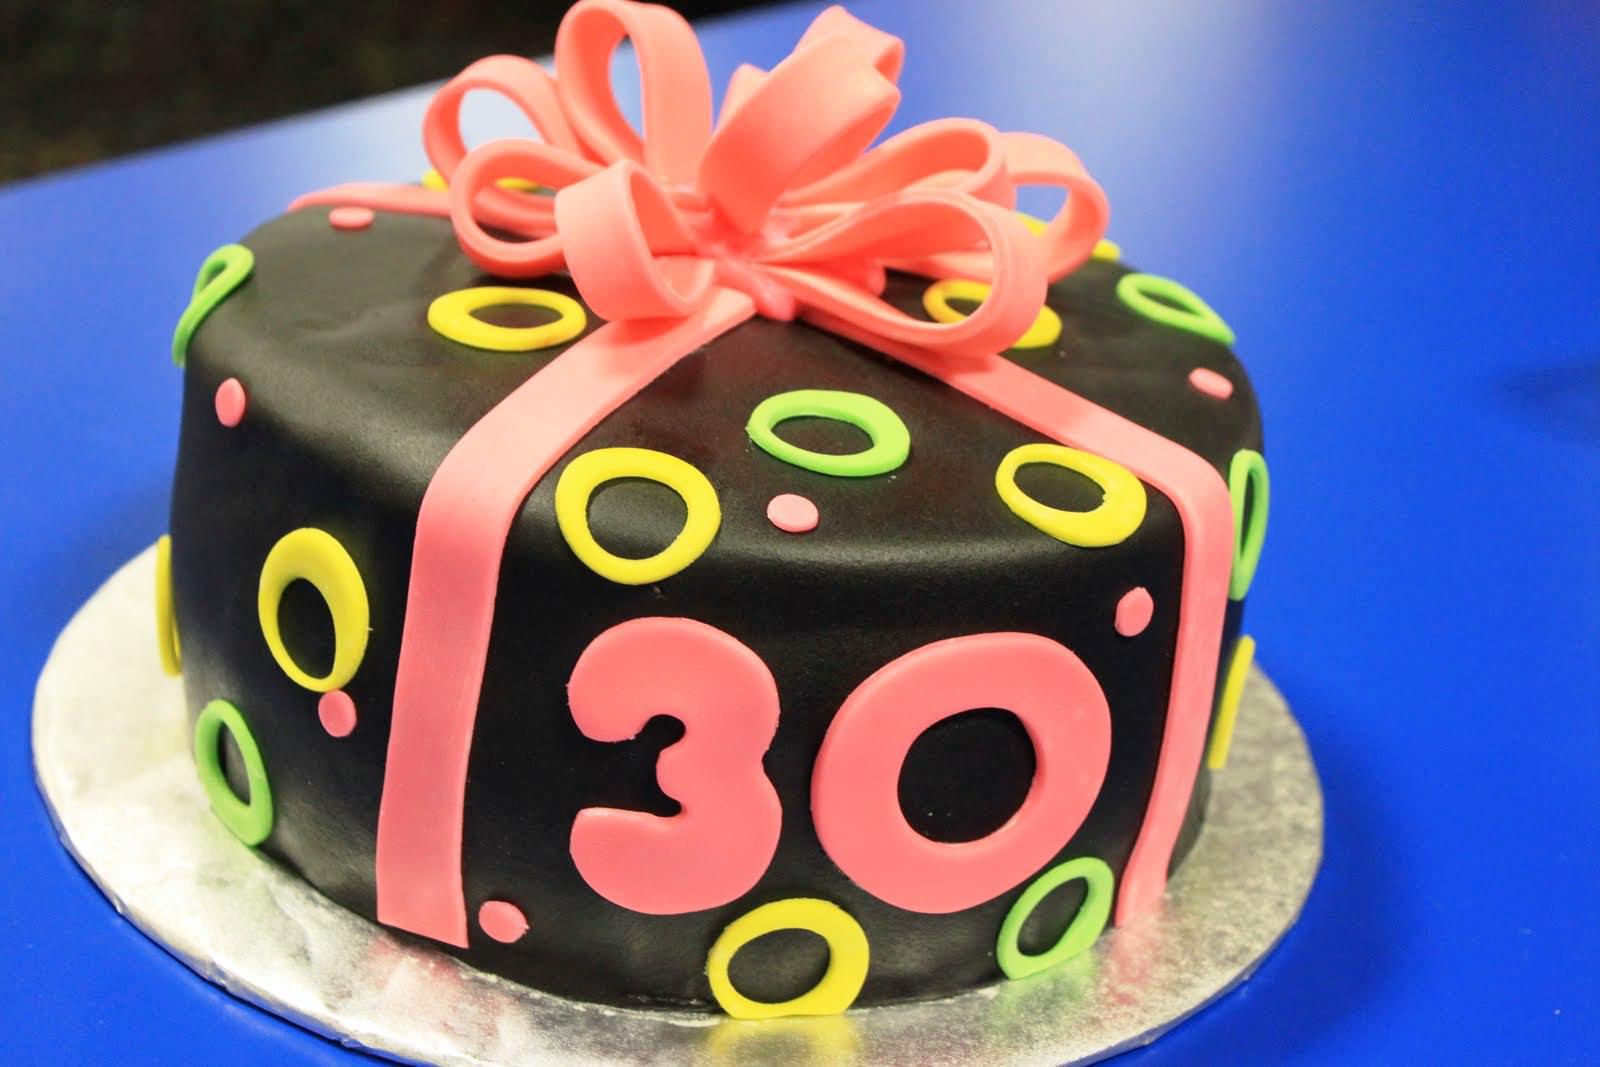 Happy Birthday Cakes 30 Years.